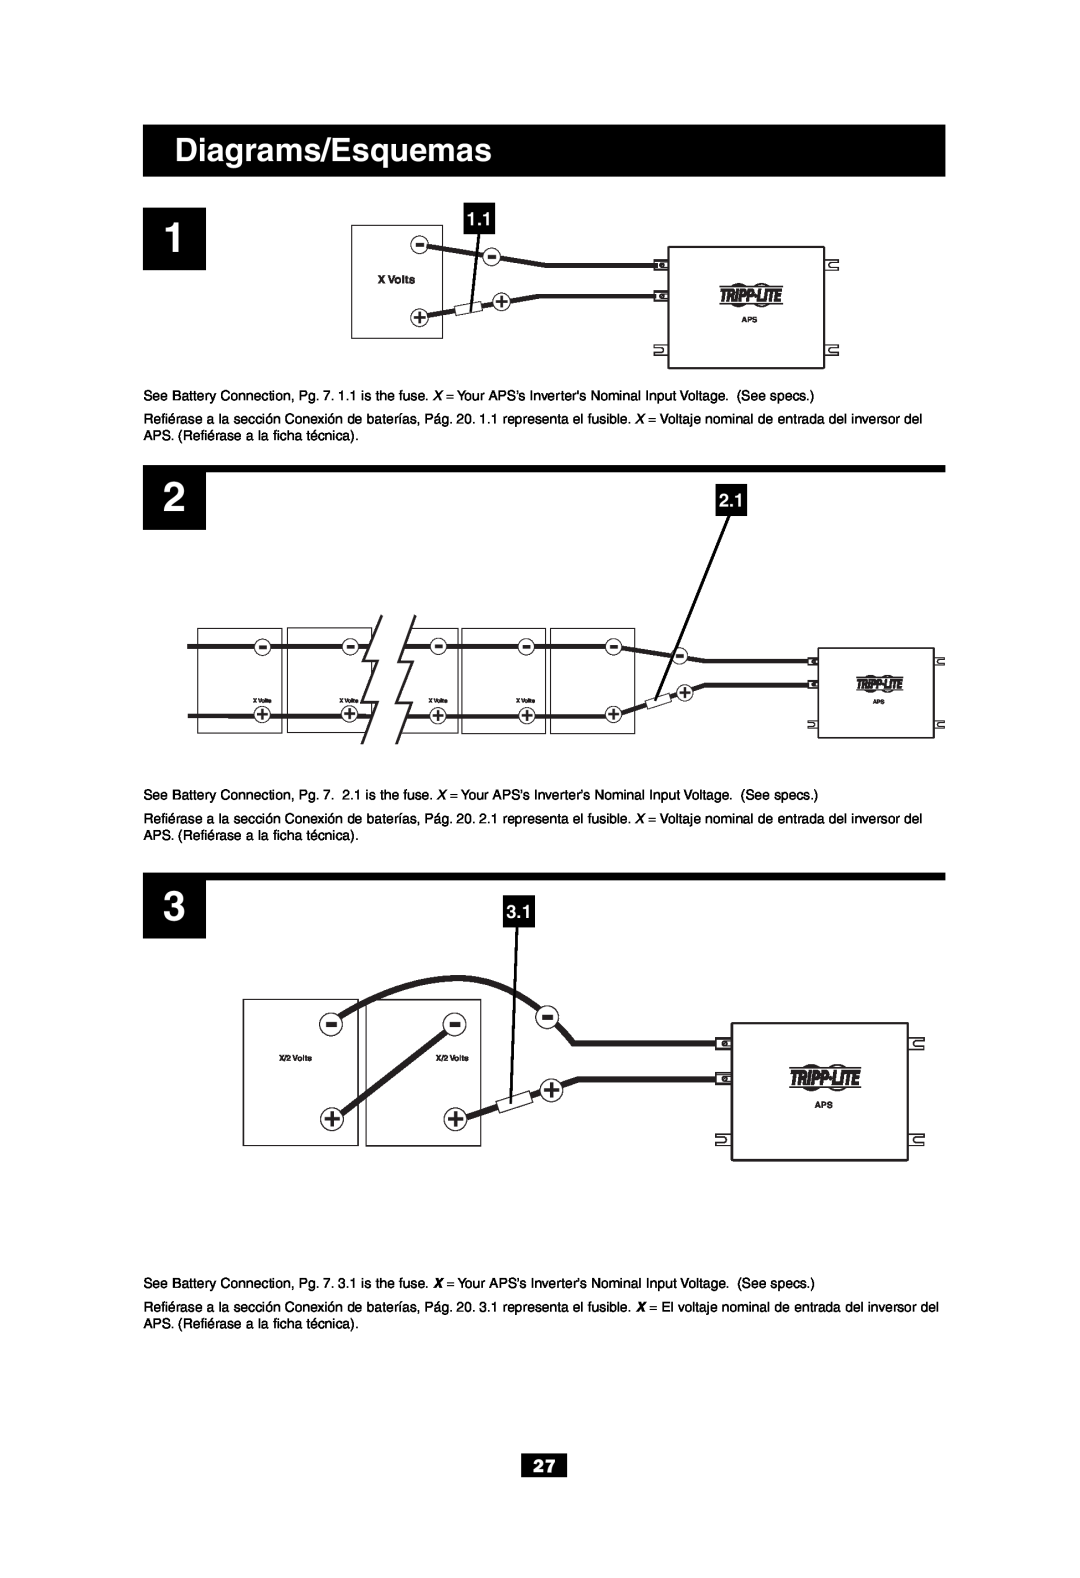 Tripp Lite APS 612 owner manual Diagrams/Esquemas, X Volts 